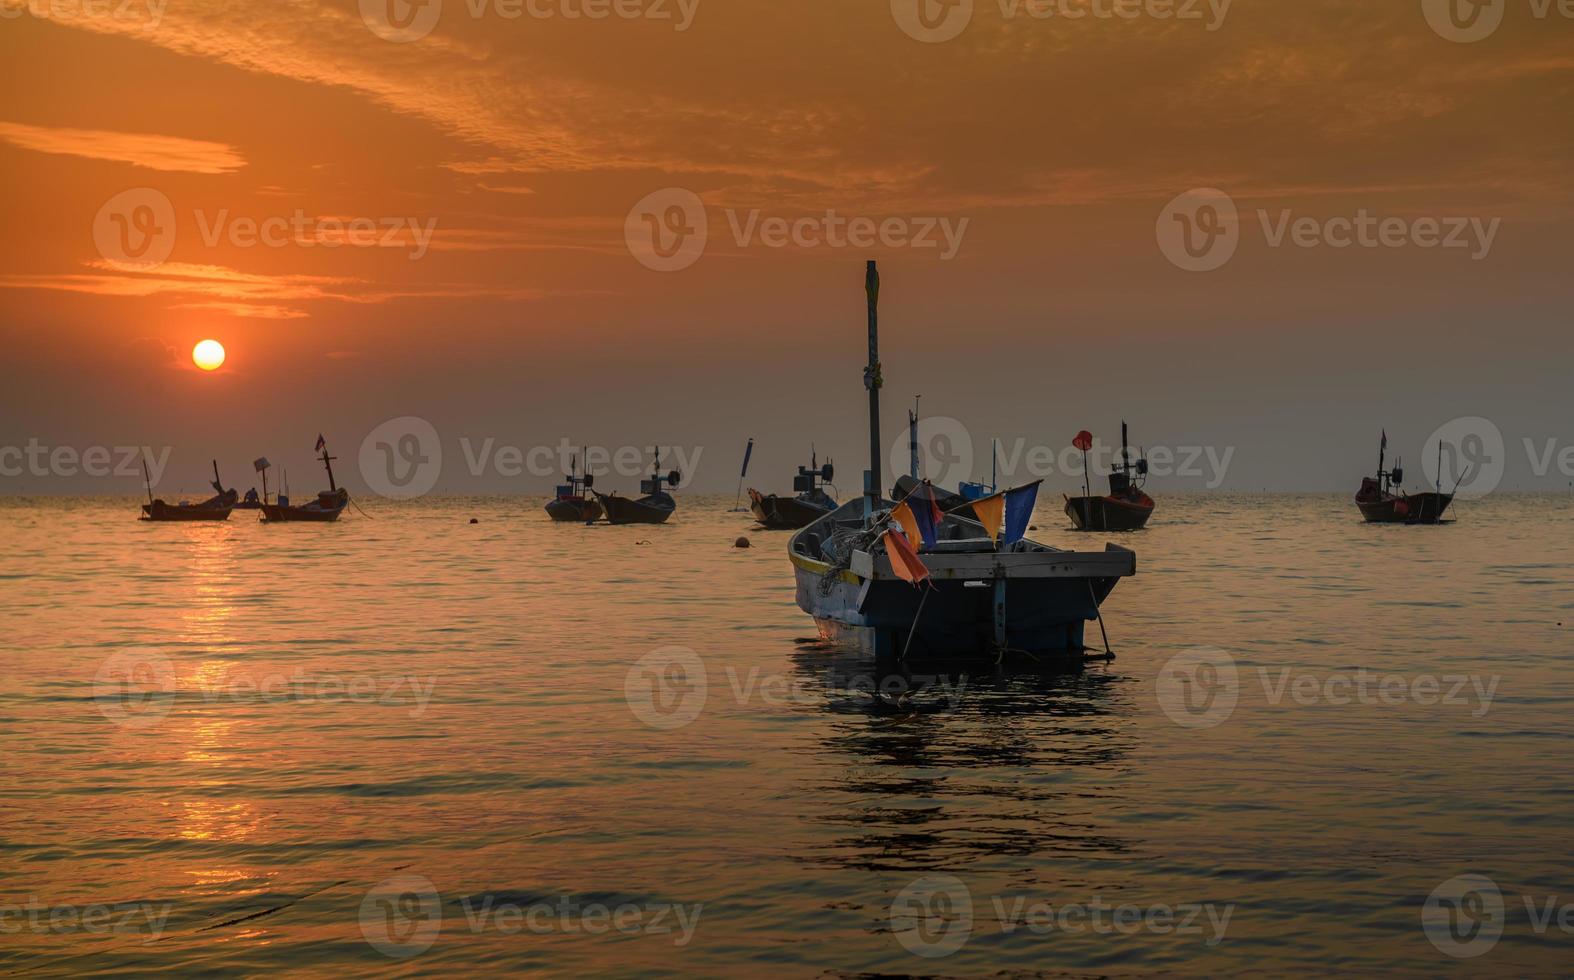 pequenos barcos de pescadores no mar. foto